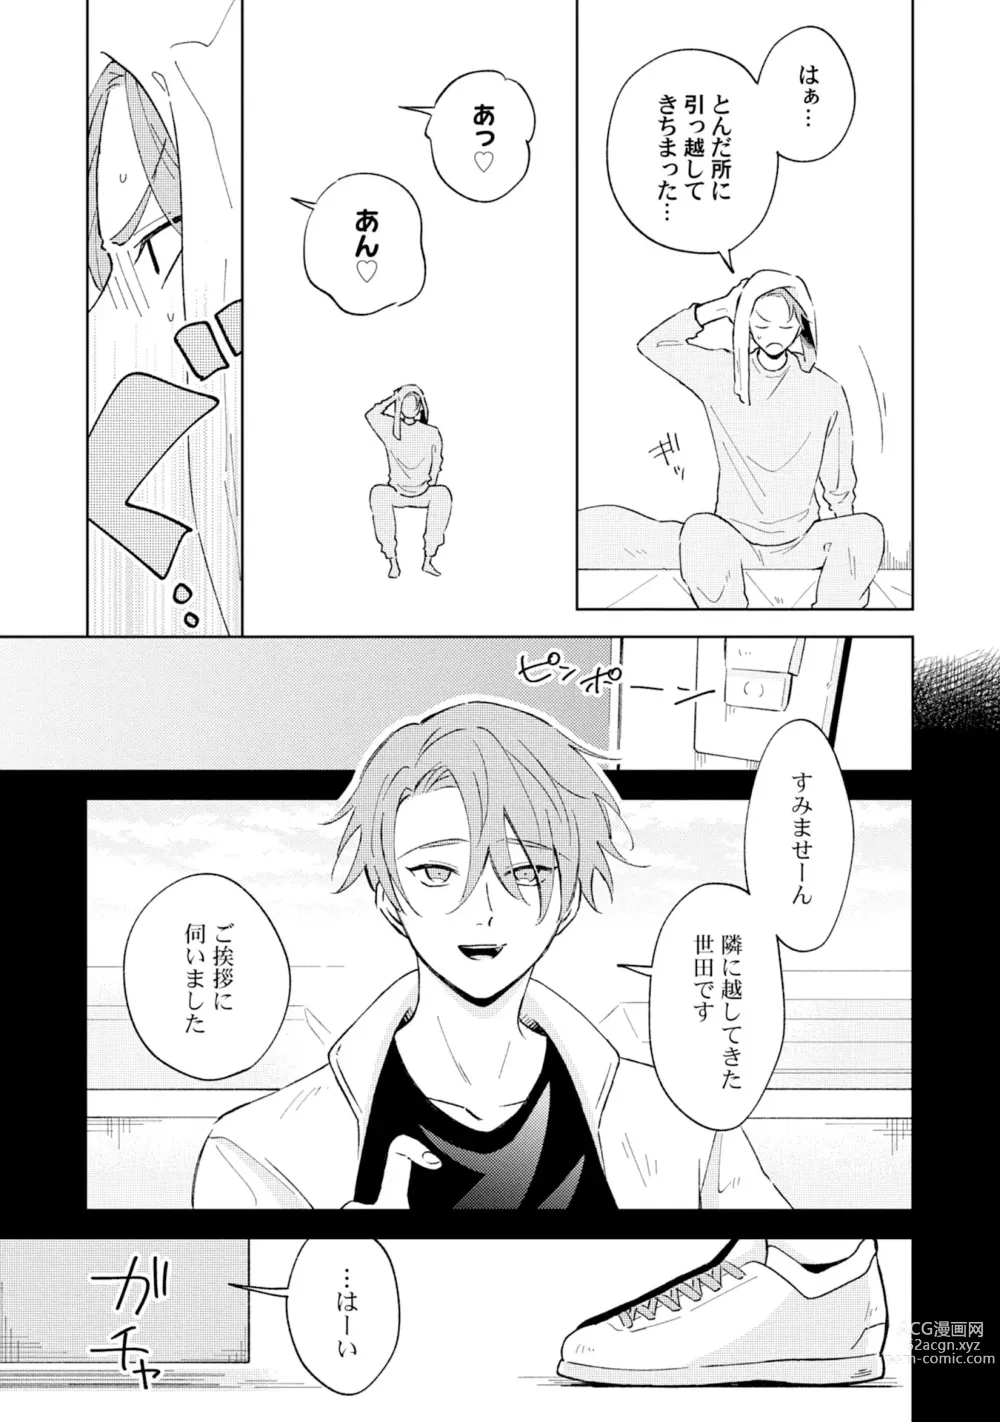 Page 7 of manga Toho 3-byou no Trouble Love Room 1